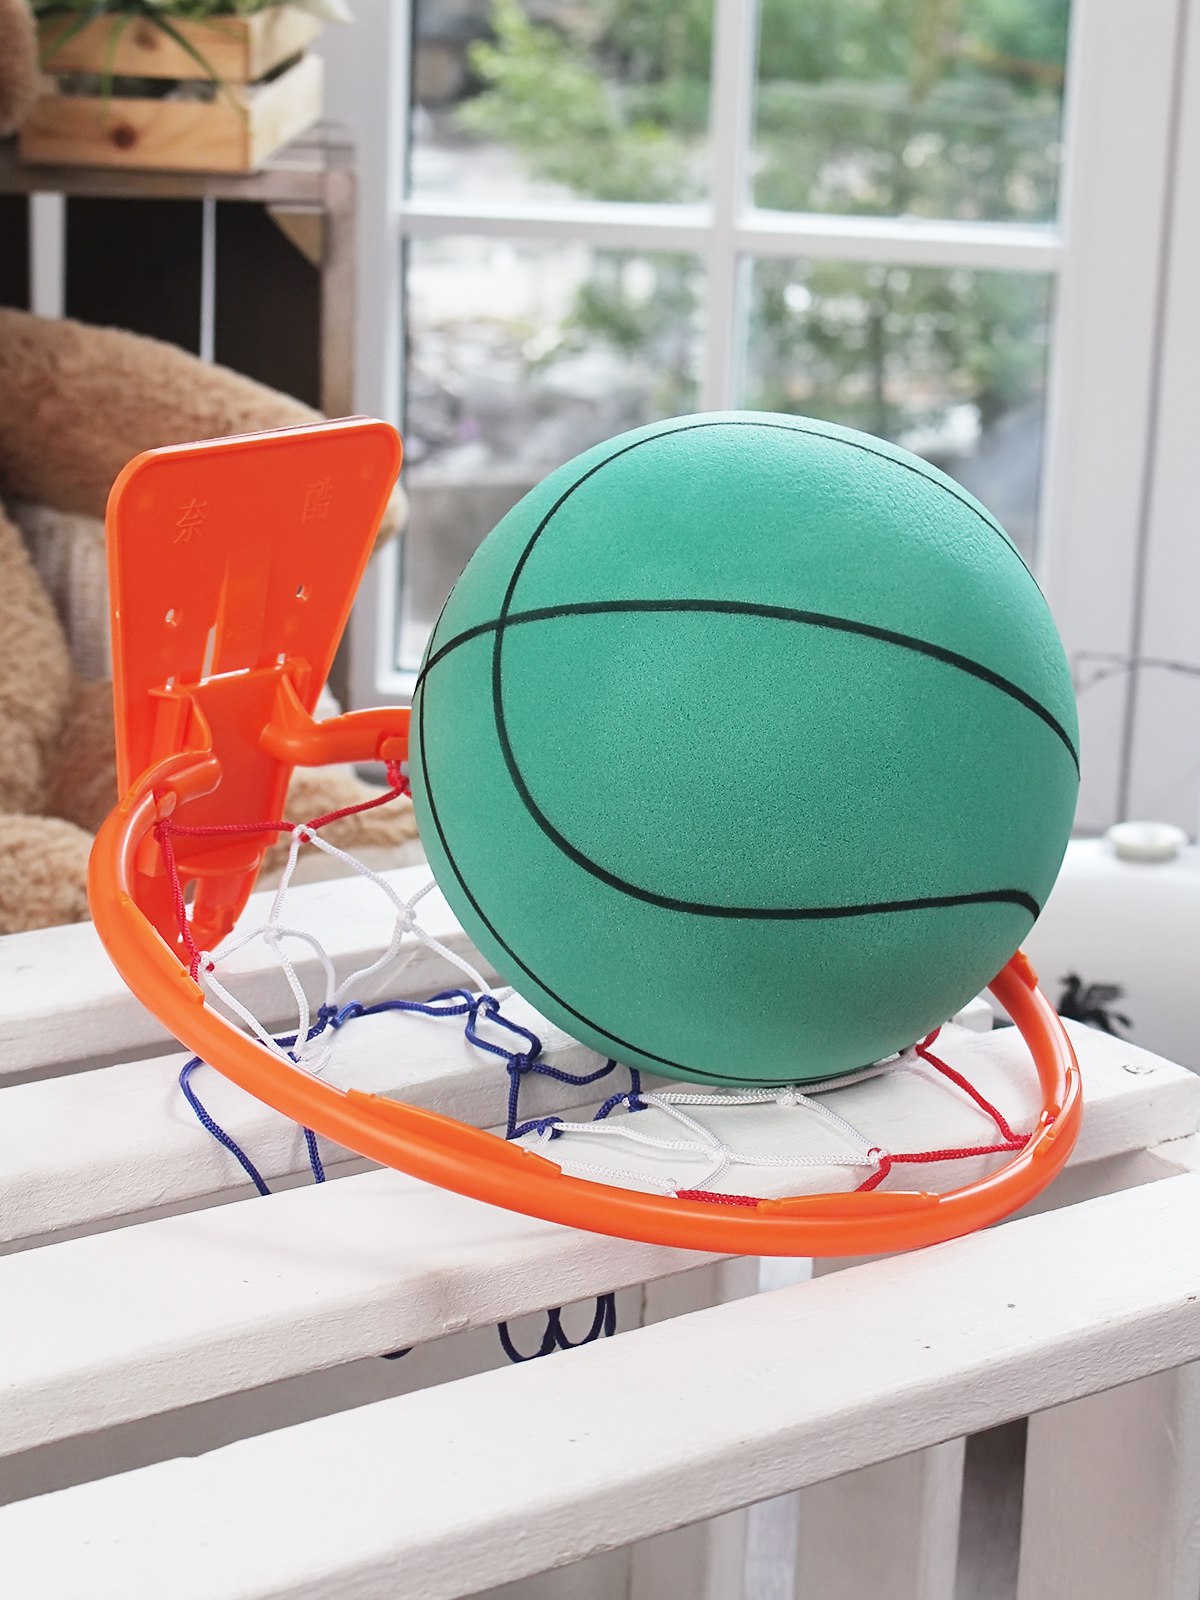 Набор для баскетбола GO&PLAY бесшумный зеленый тихий мяч и баскетбольное кольцо индивидуальная тактическая подготовка в спортивных играх на примере баскетбола и волейбола